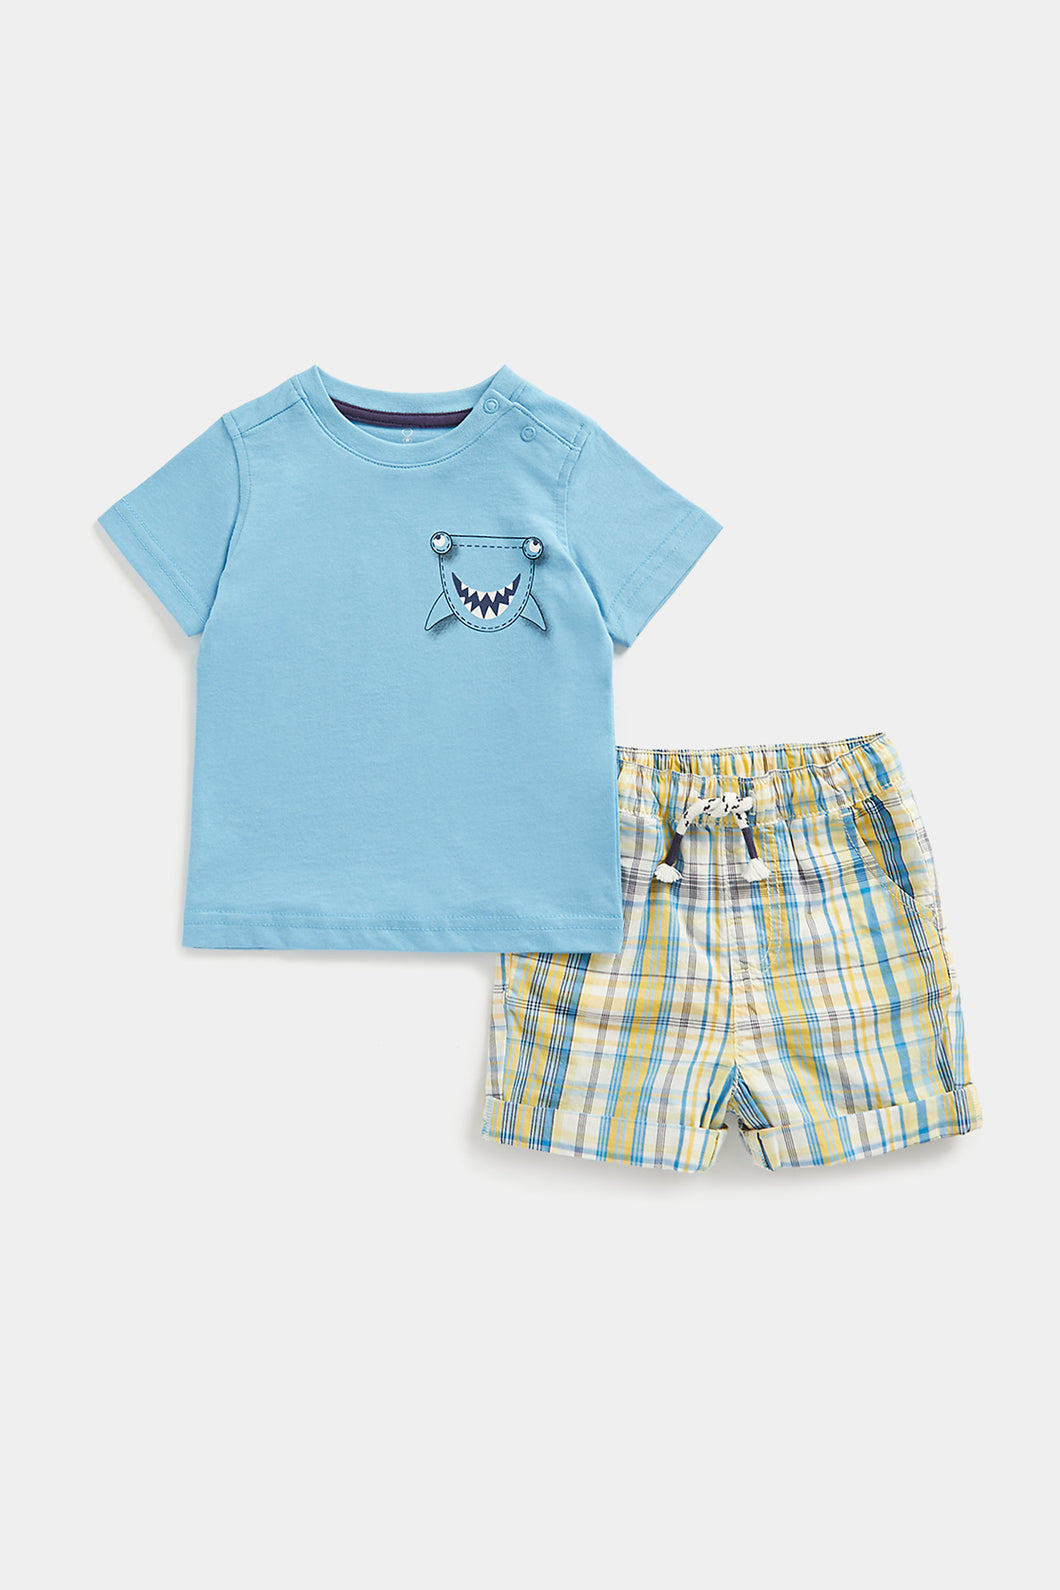 Mothercare Shark T-Shirt and Shorts Set